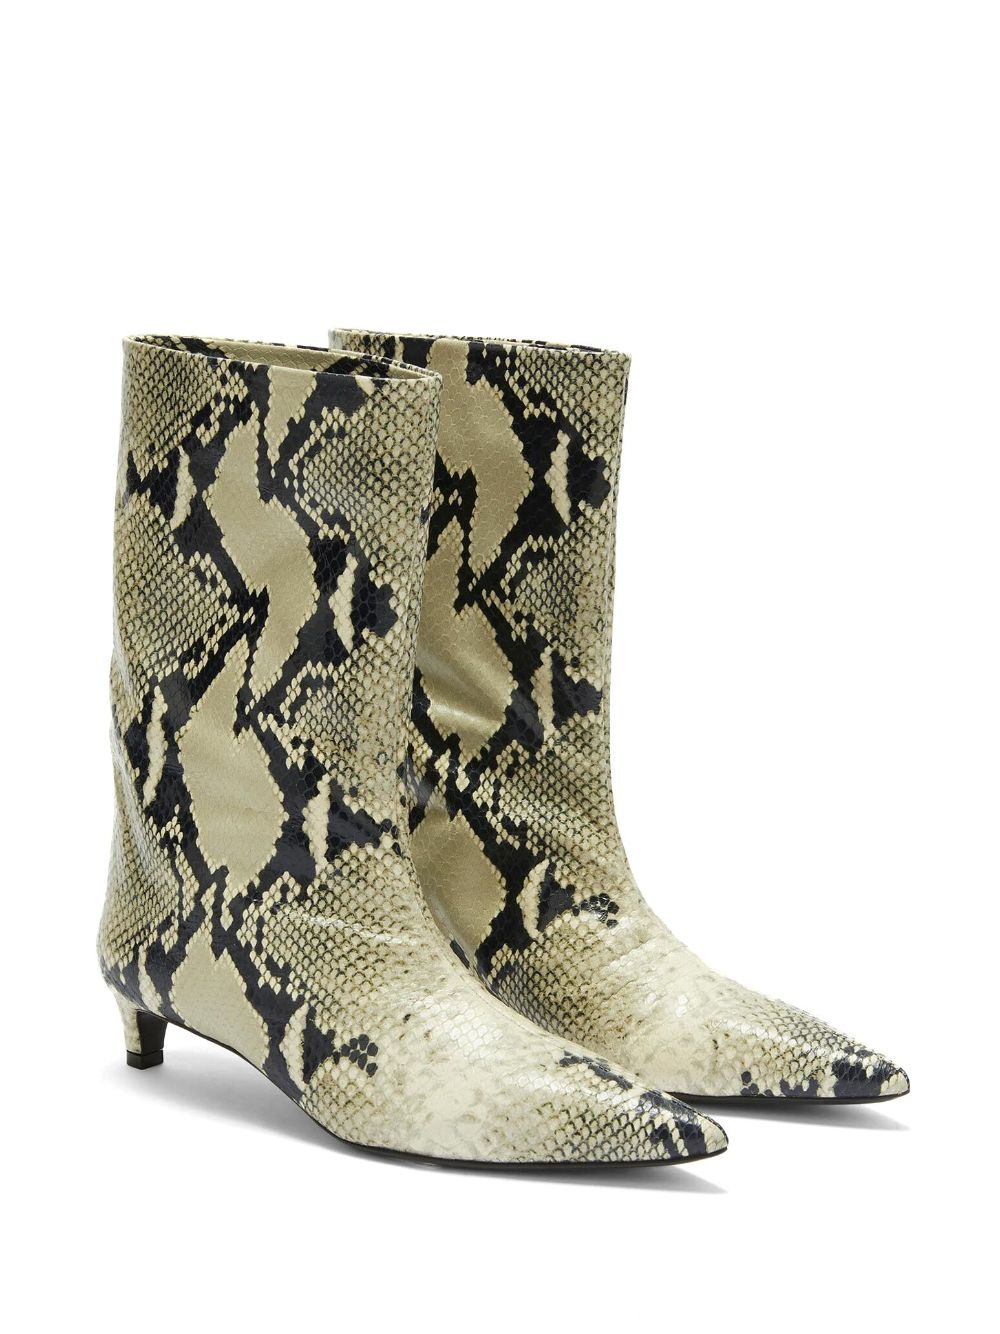 Jil Sander snake-print leather ankle boots - Beige